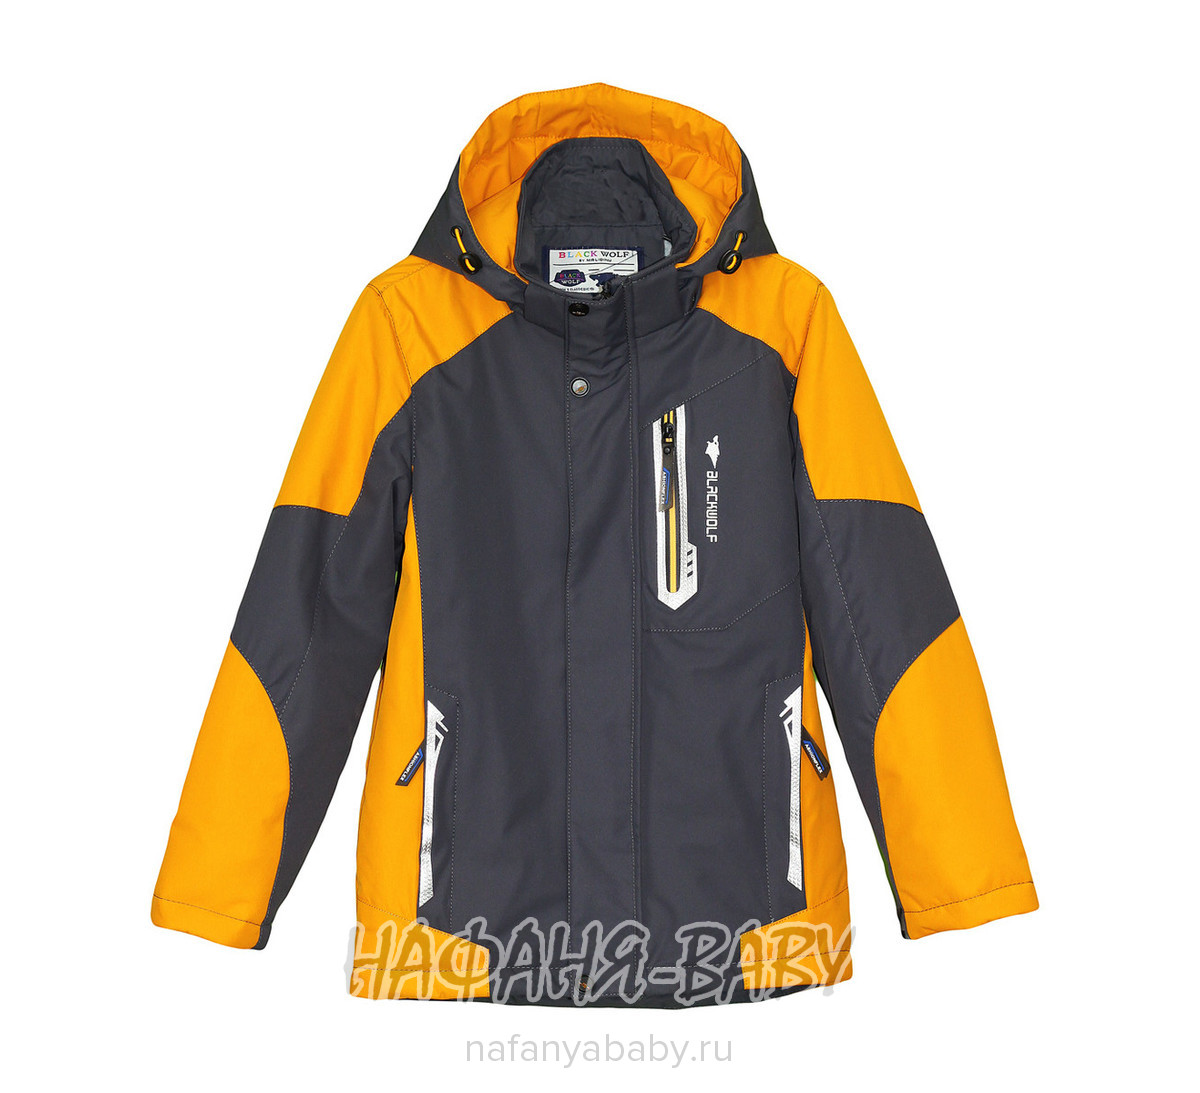 Детская демисезонная куртка Black Wolf, купить в интернет магазине Нафаня. арт: 2020.